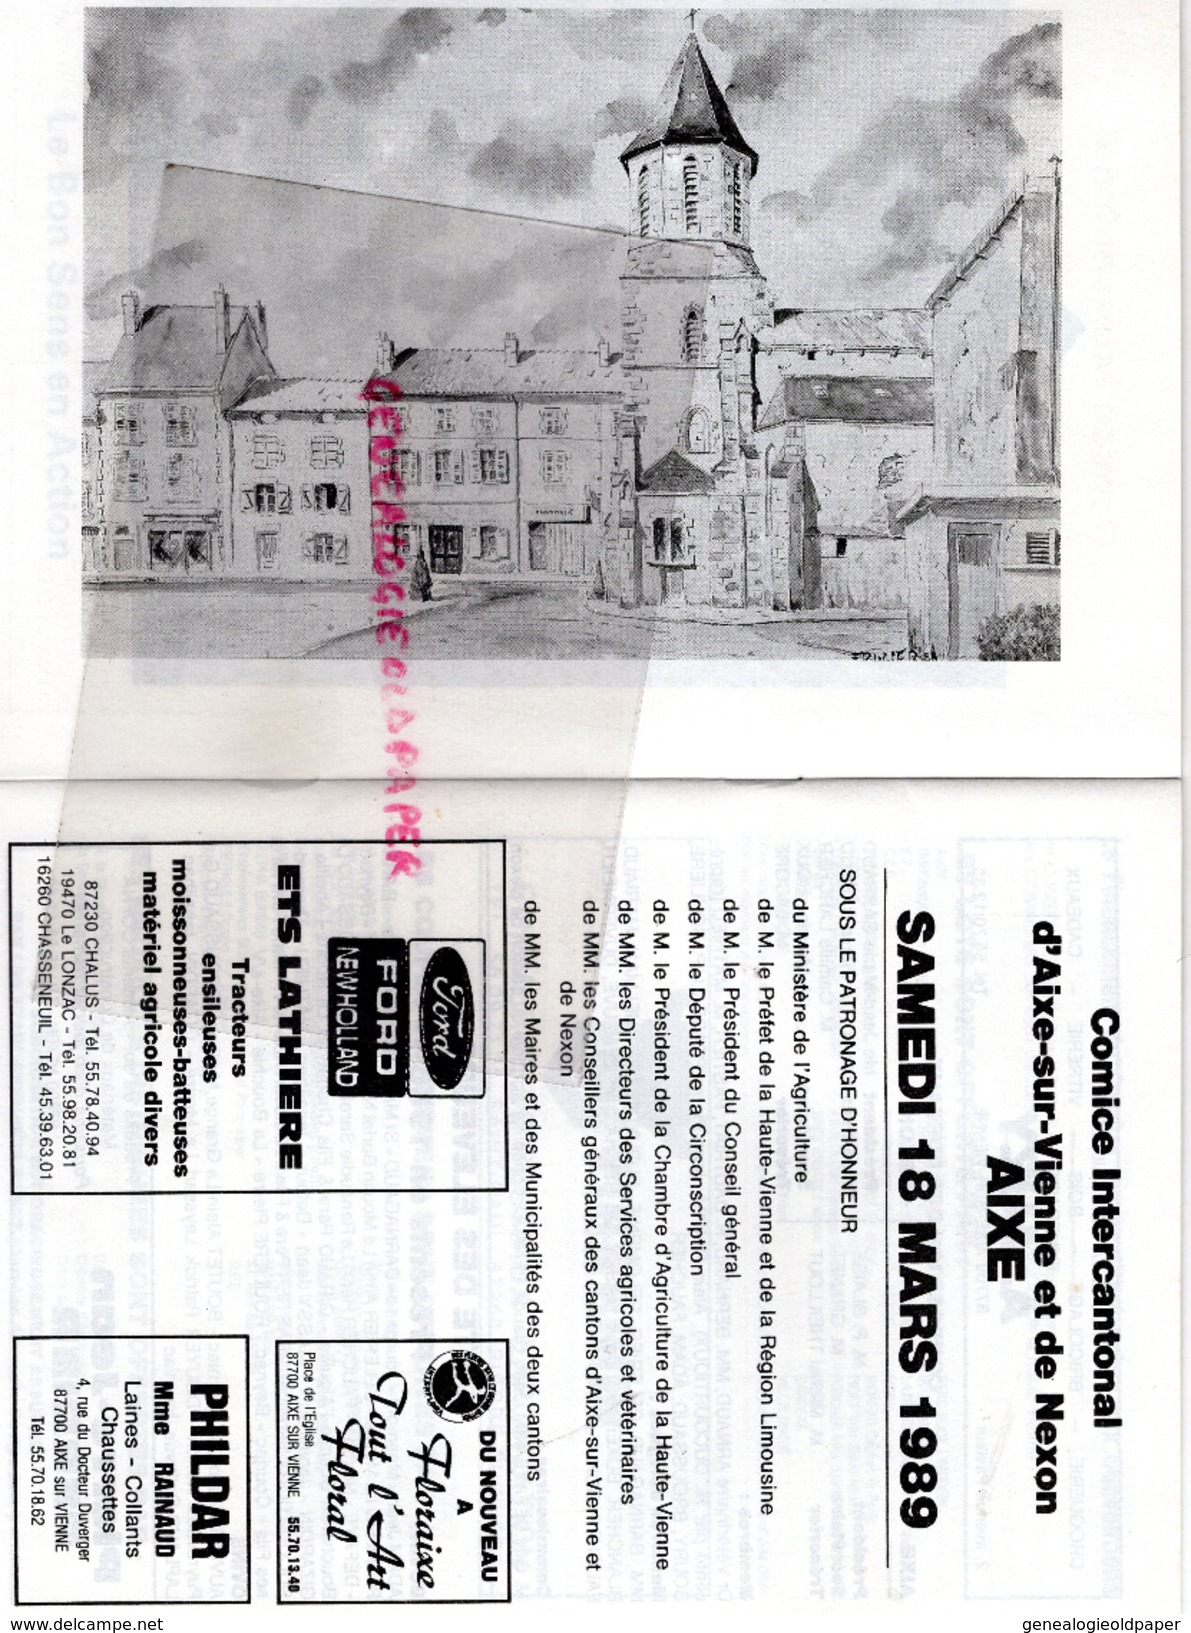 87 - AIXE SUR VIENNE ET NEXON -LIVRET COMICE INTERCANTONAL -18 MARS 1989- RACE LIMOUSINE- LES VASEIX LIMOGES - Limousin